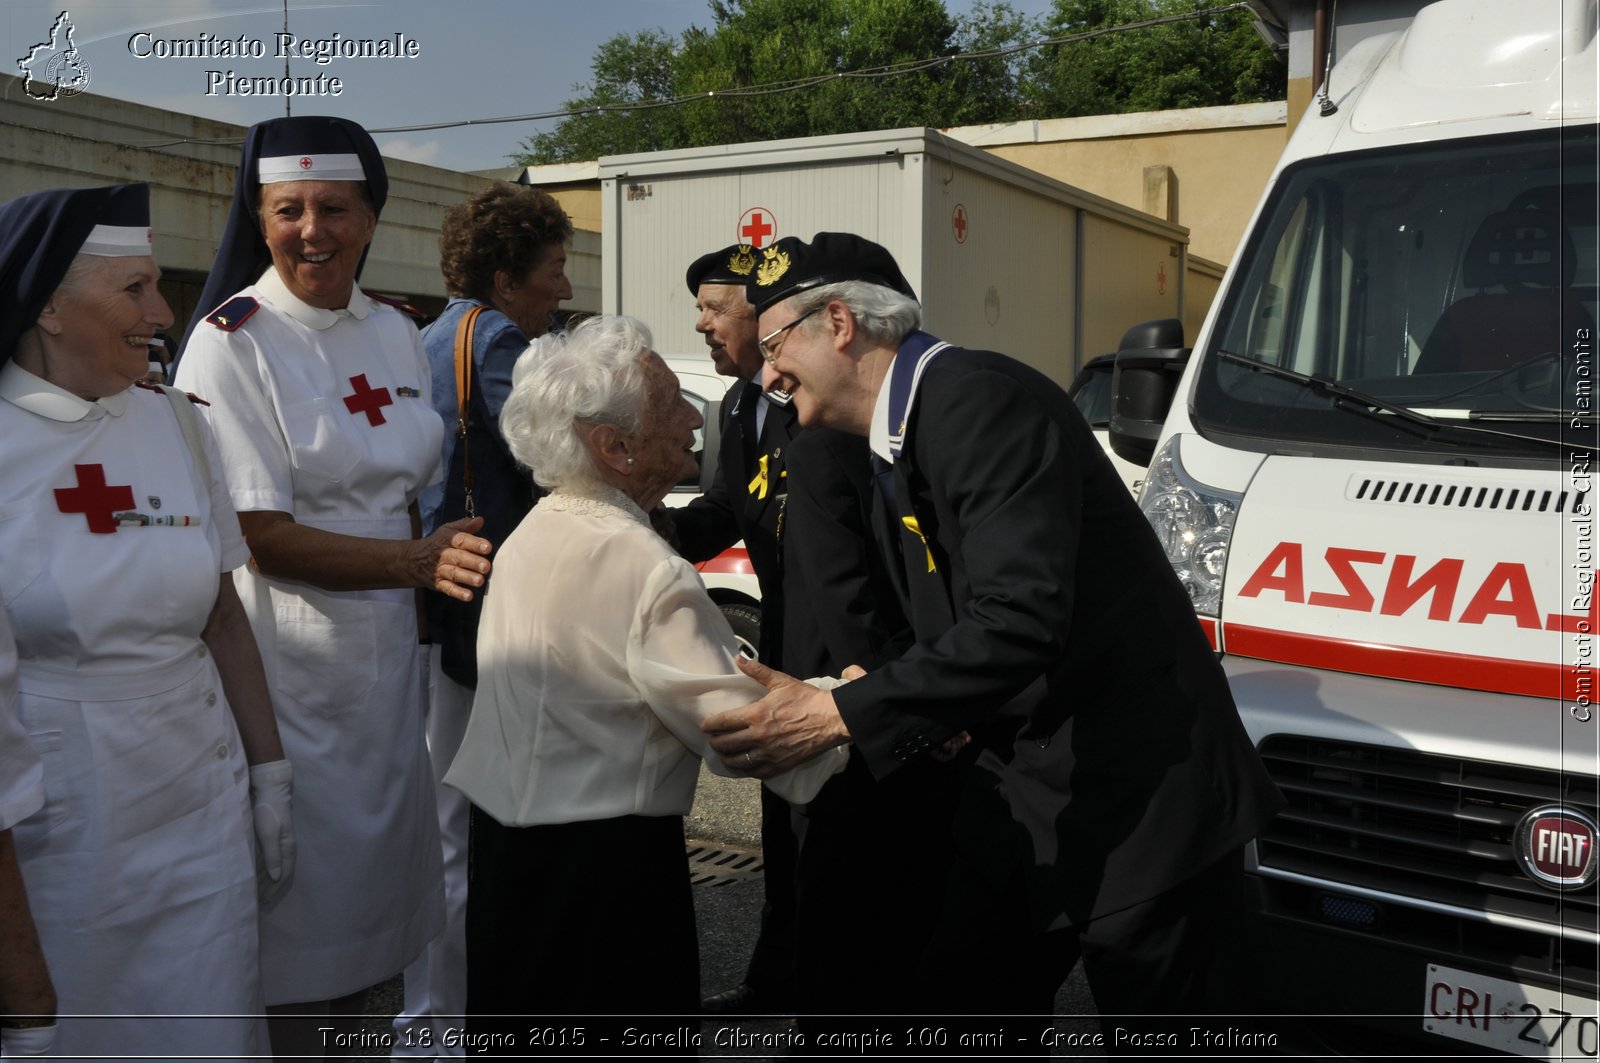 Torino 18 Giugno 2015 - Sorella Cibrario compie 100 anni - Croce Rossa Italiana- Comitato Regionale del Piemonte